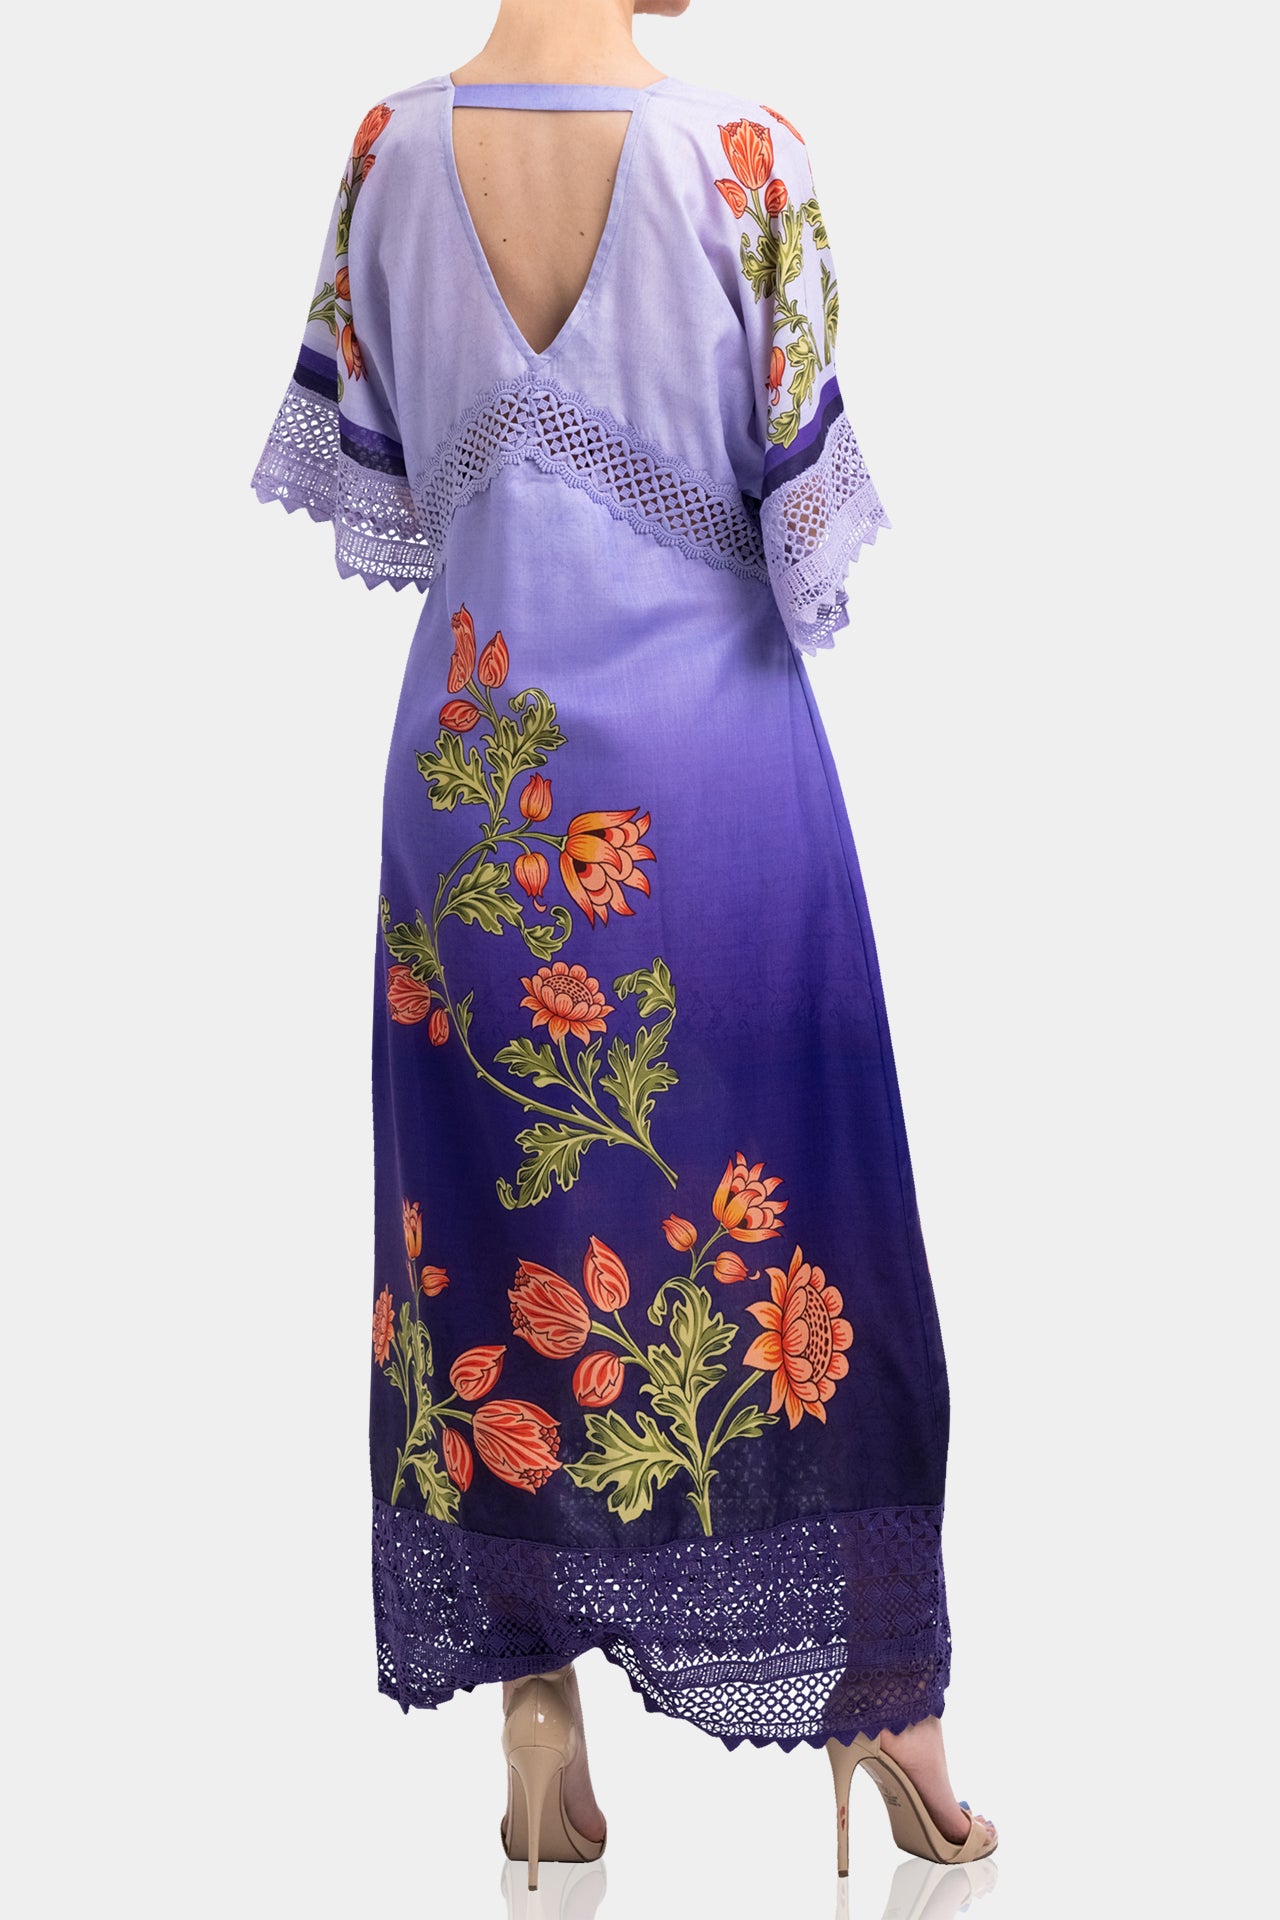 Long Caftan Dress Purple- Luxury Kaftans & Caftan Dress For Women ...